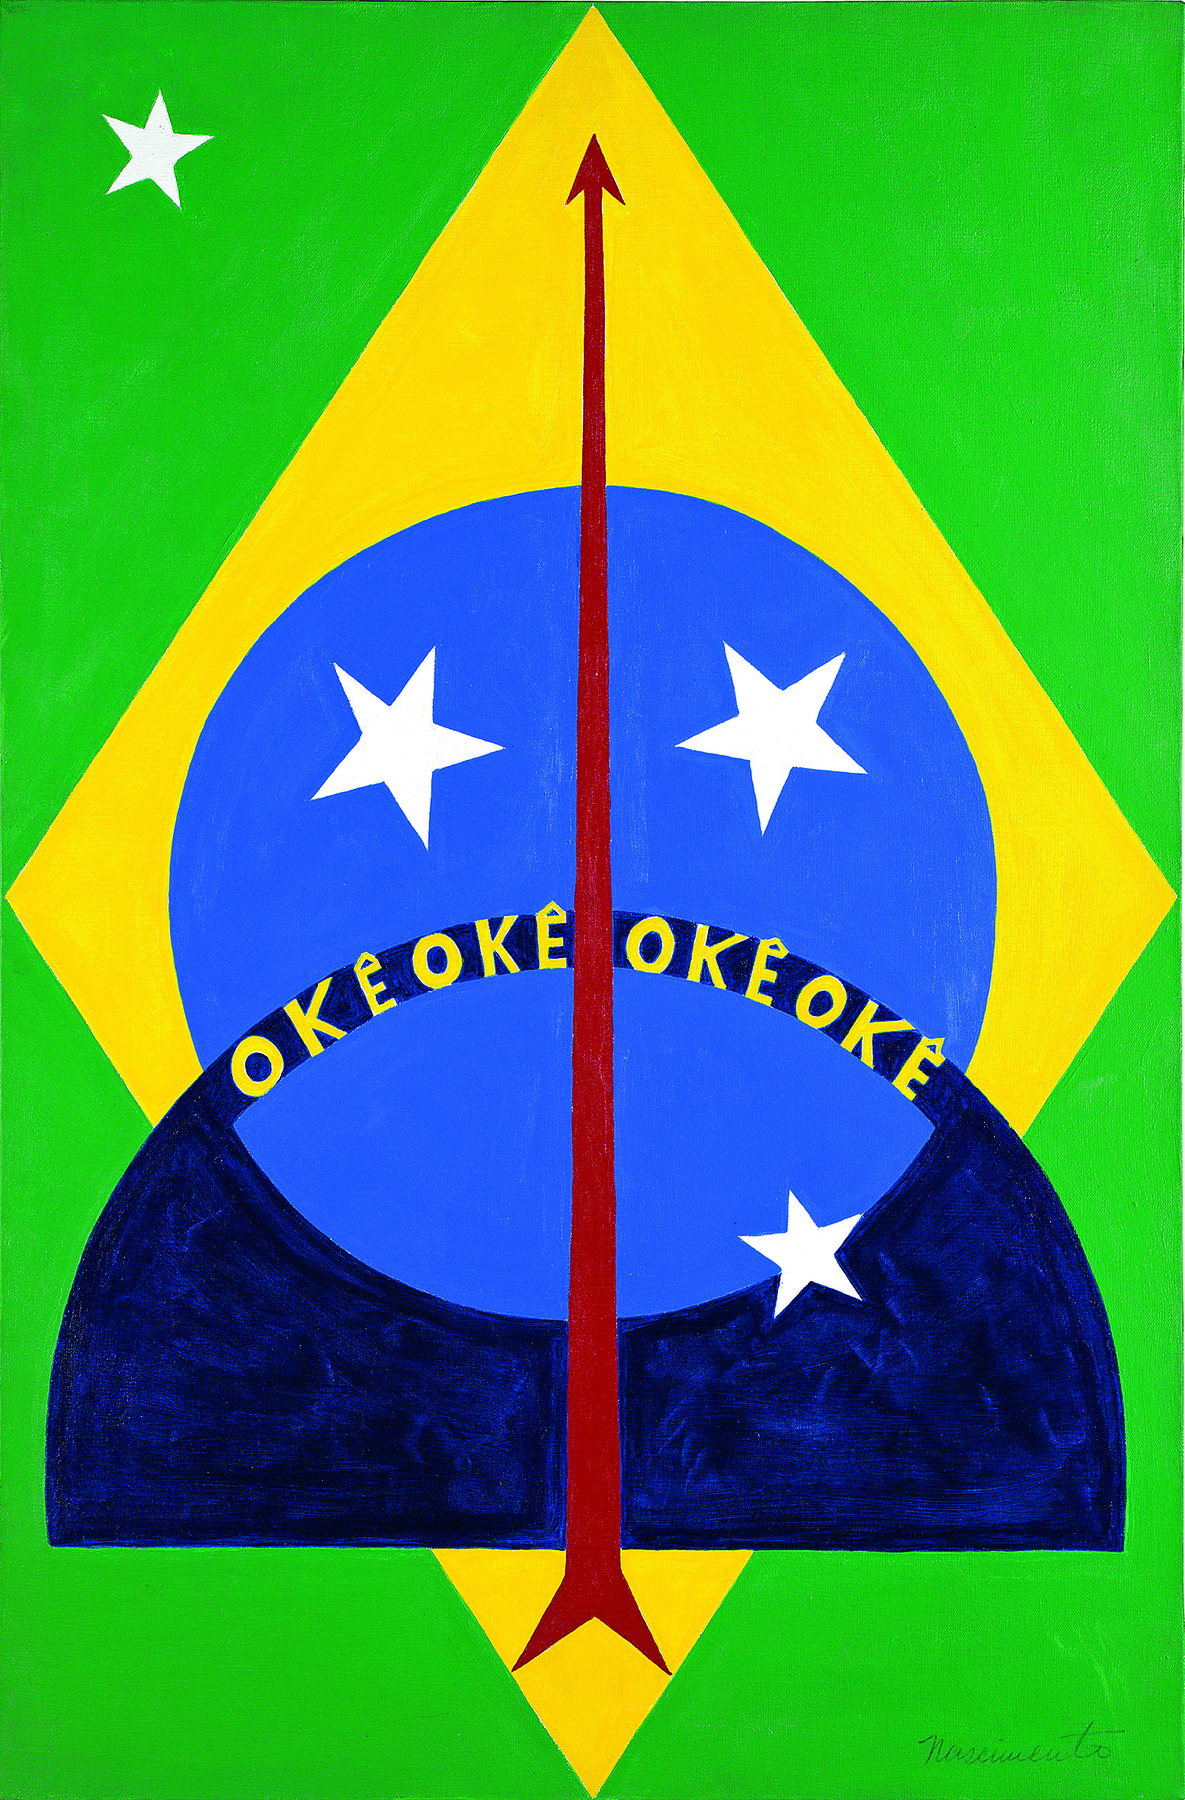 Pintura. A obra retrata a bandeira do Brasil, na vertical, com algumas modificações: há apenas quatro estrelas brancas, e uma delas encontra-se na parte verde. No centro da imagem, sobre o círculo azul, o texto: okê okê okê okê. Um arco azul-escuro e uma flecha vermelha foram incorporados à bandeira.